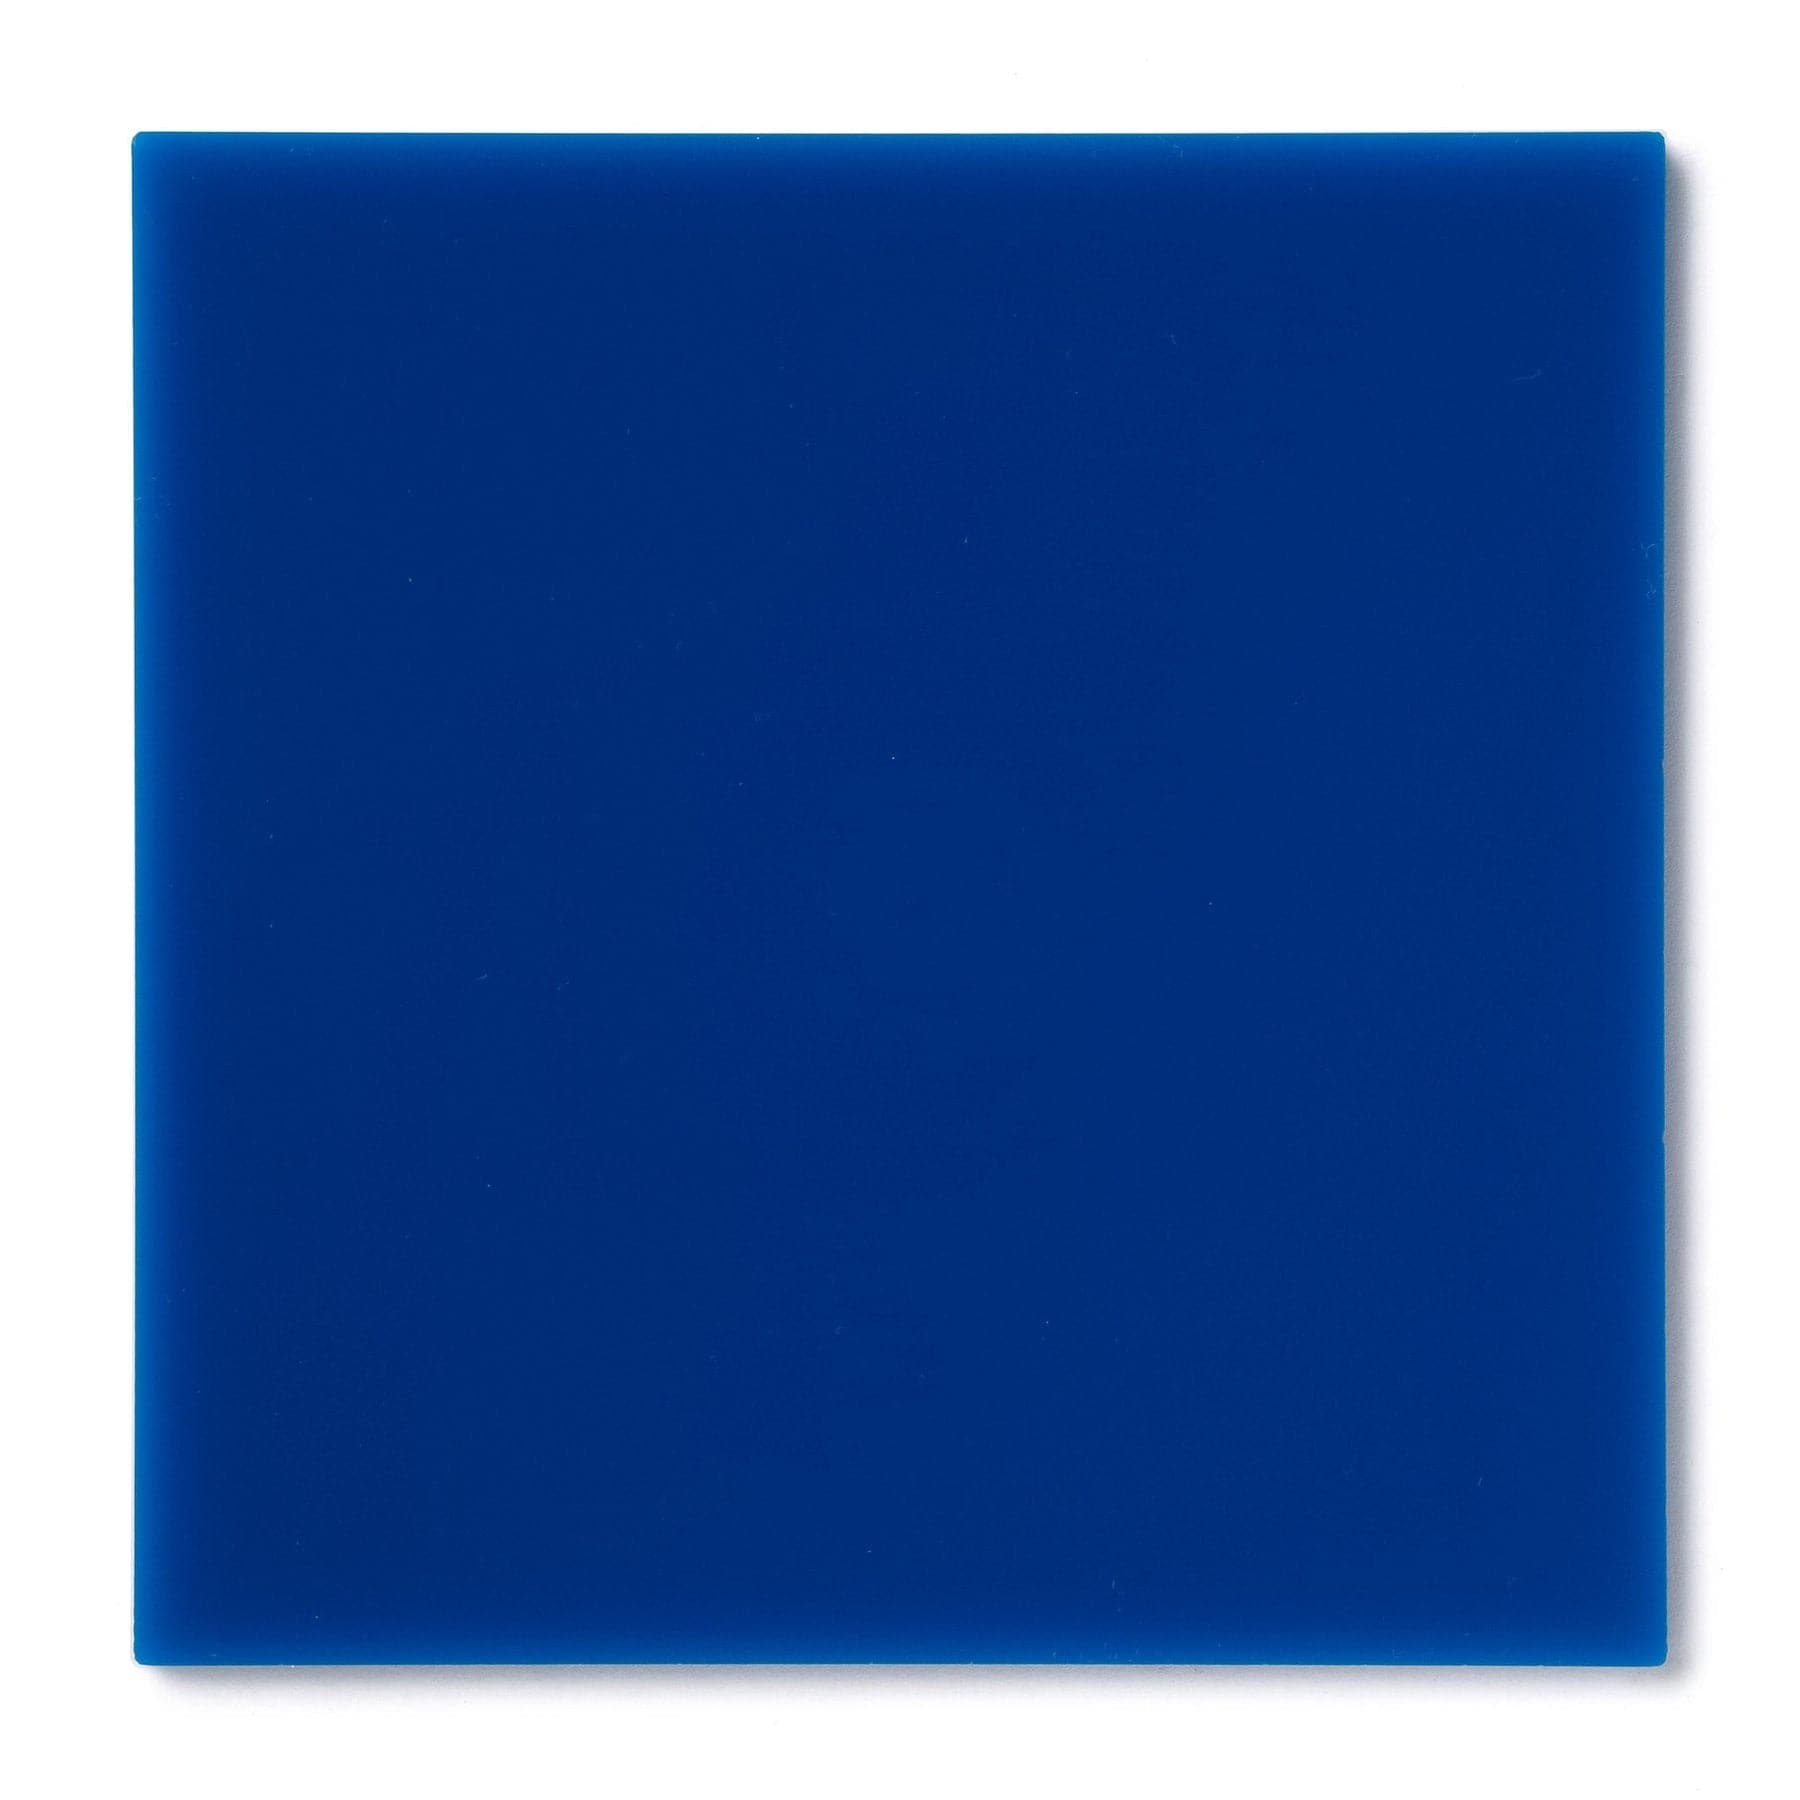 Acrylic Sheet 1/8" Blue Translucent #2114